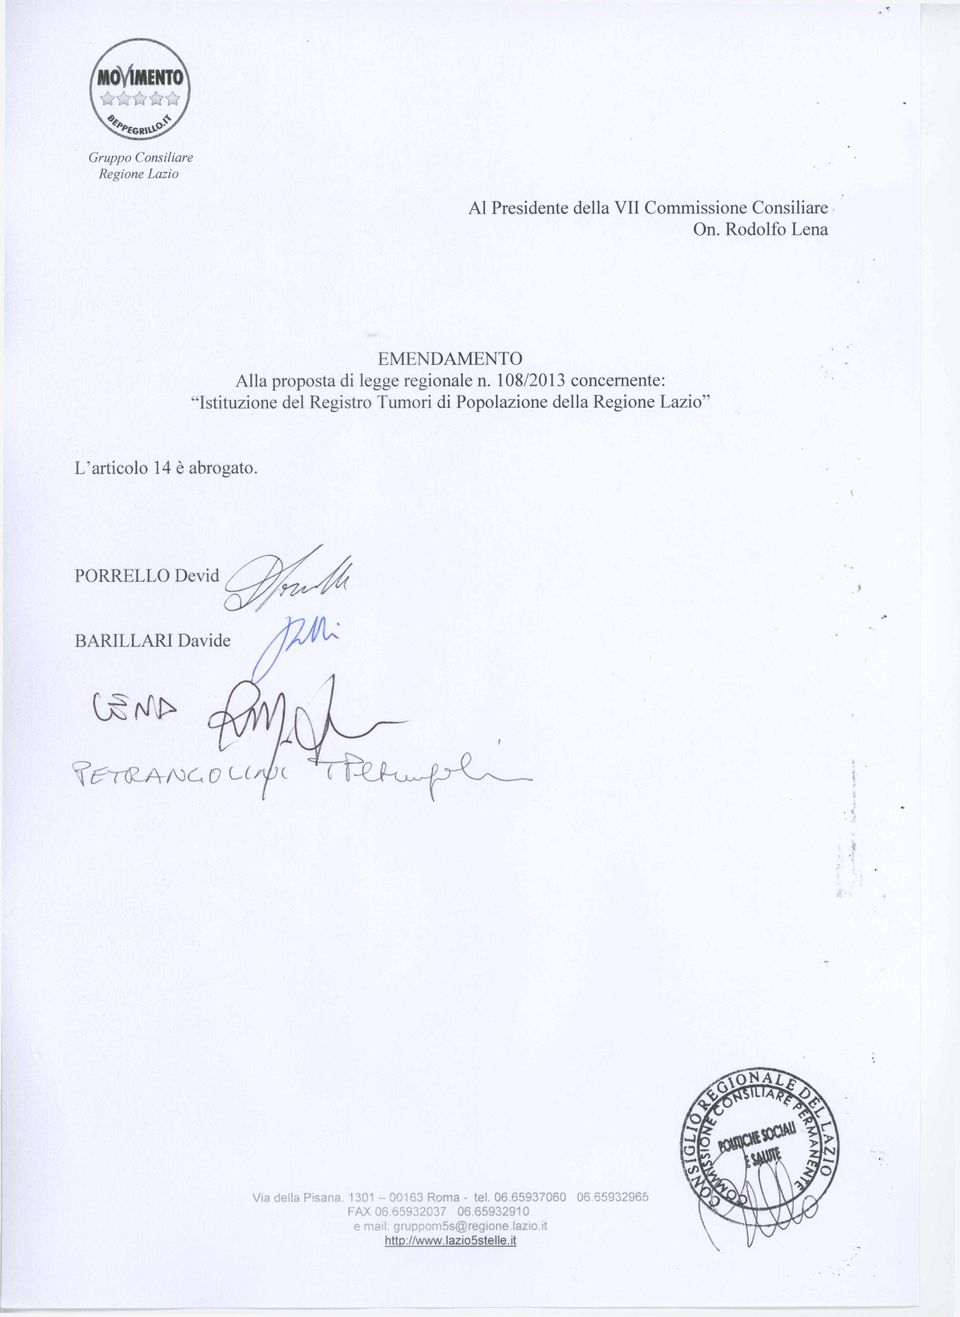 108/2013 concernente: Istituzione del Registro Tumori di Popolazione della Regione Lazio" L articolo 14